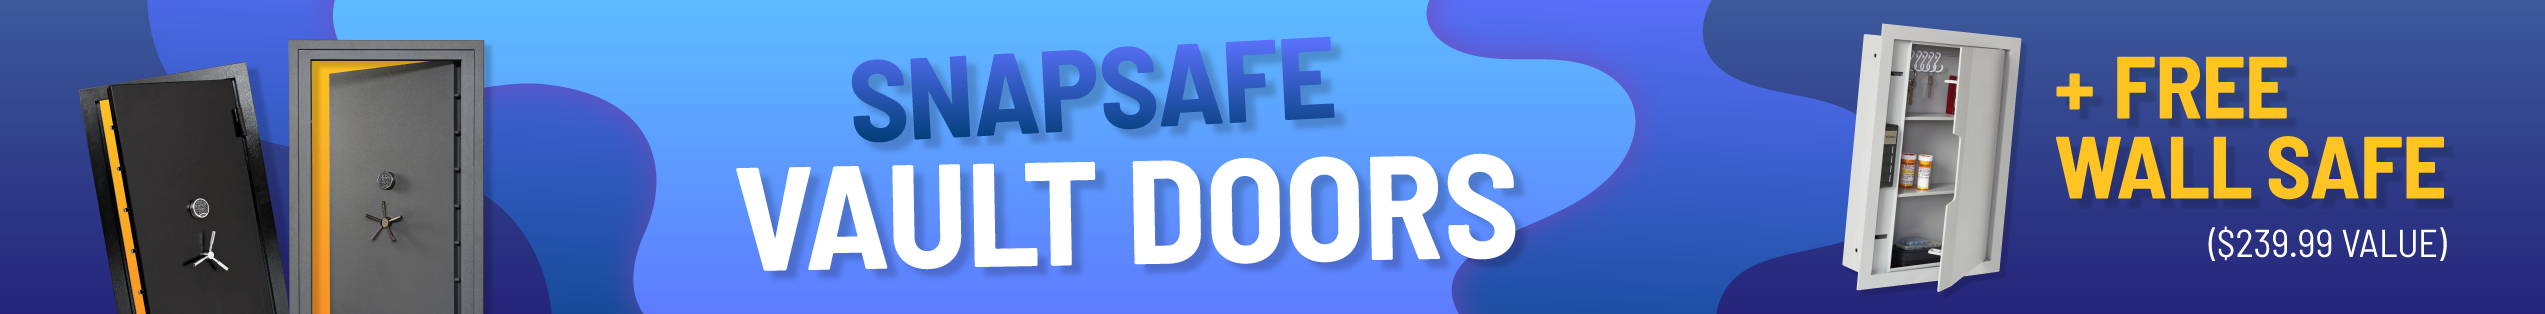 SnapSafe Vault Doors + Free Wall Safe